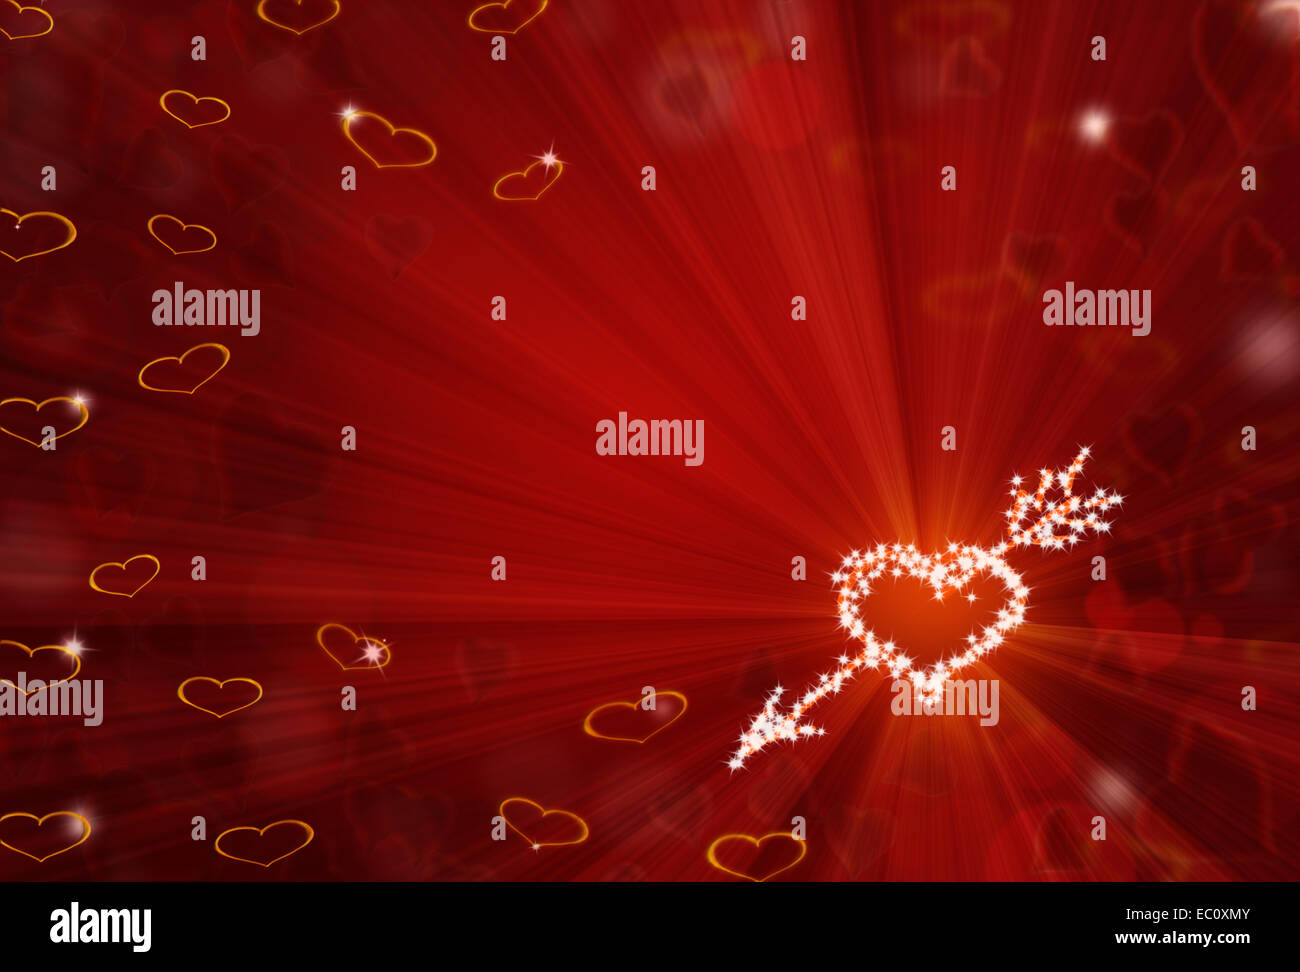 San Valentín fondo rojo en forma de corazón con brillantes estrellas y bokeh Foto de stock